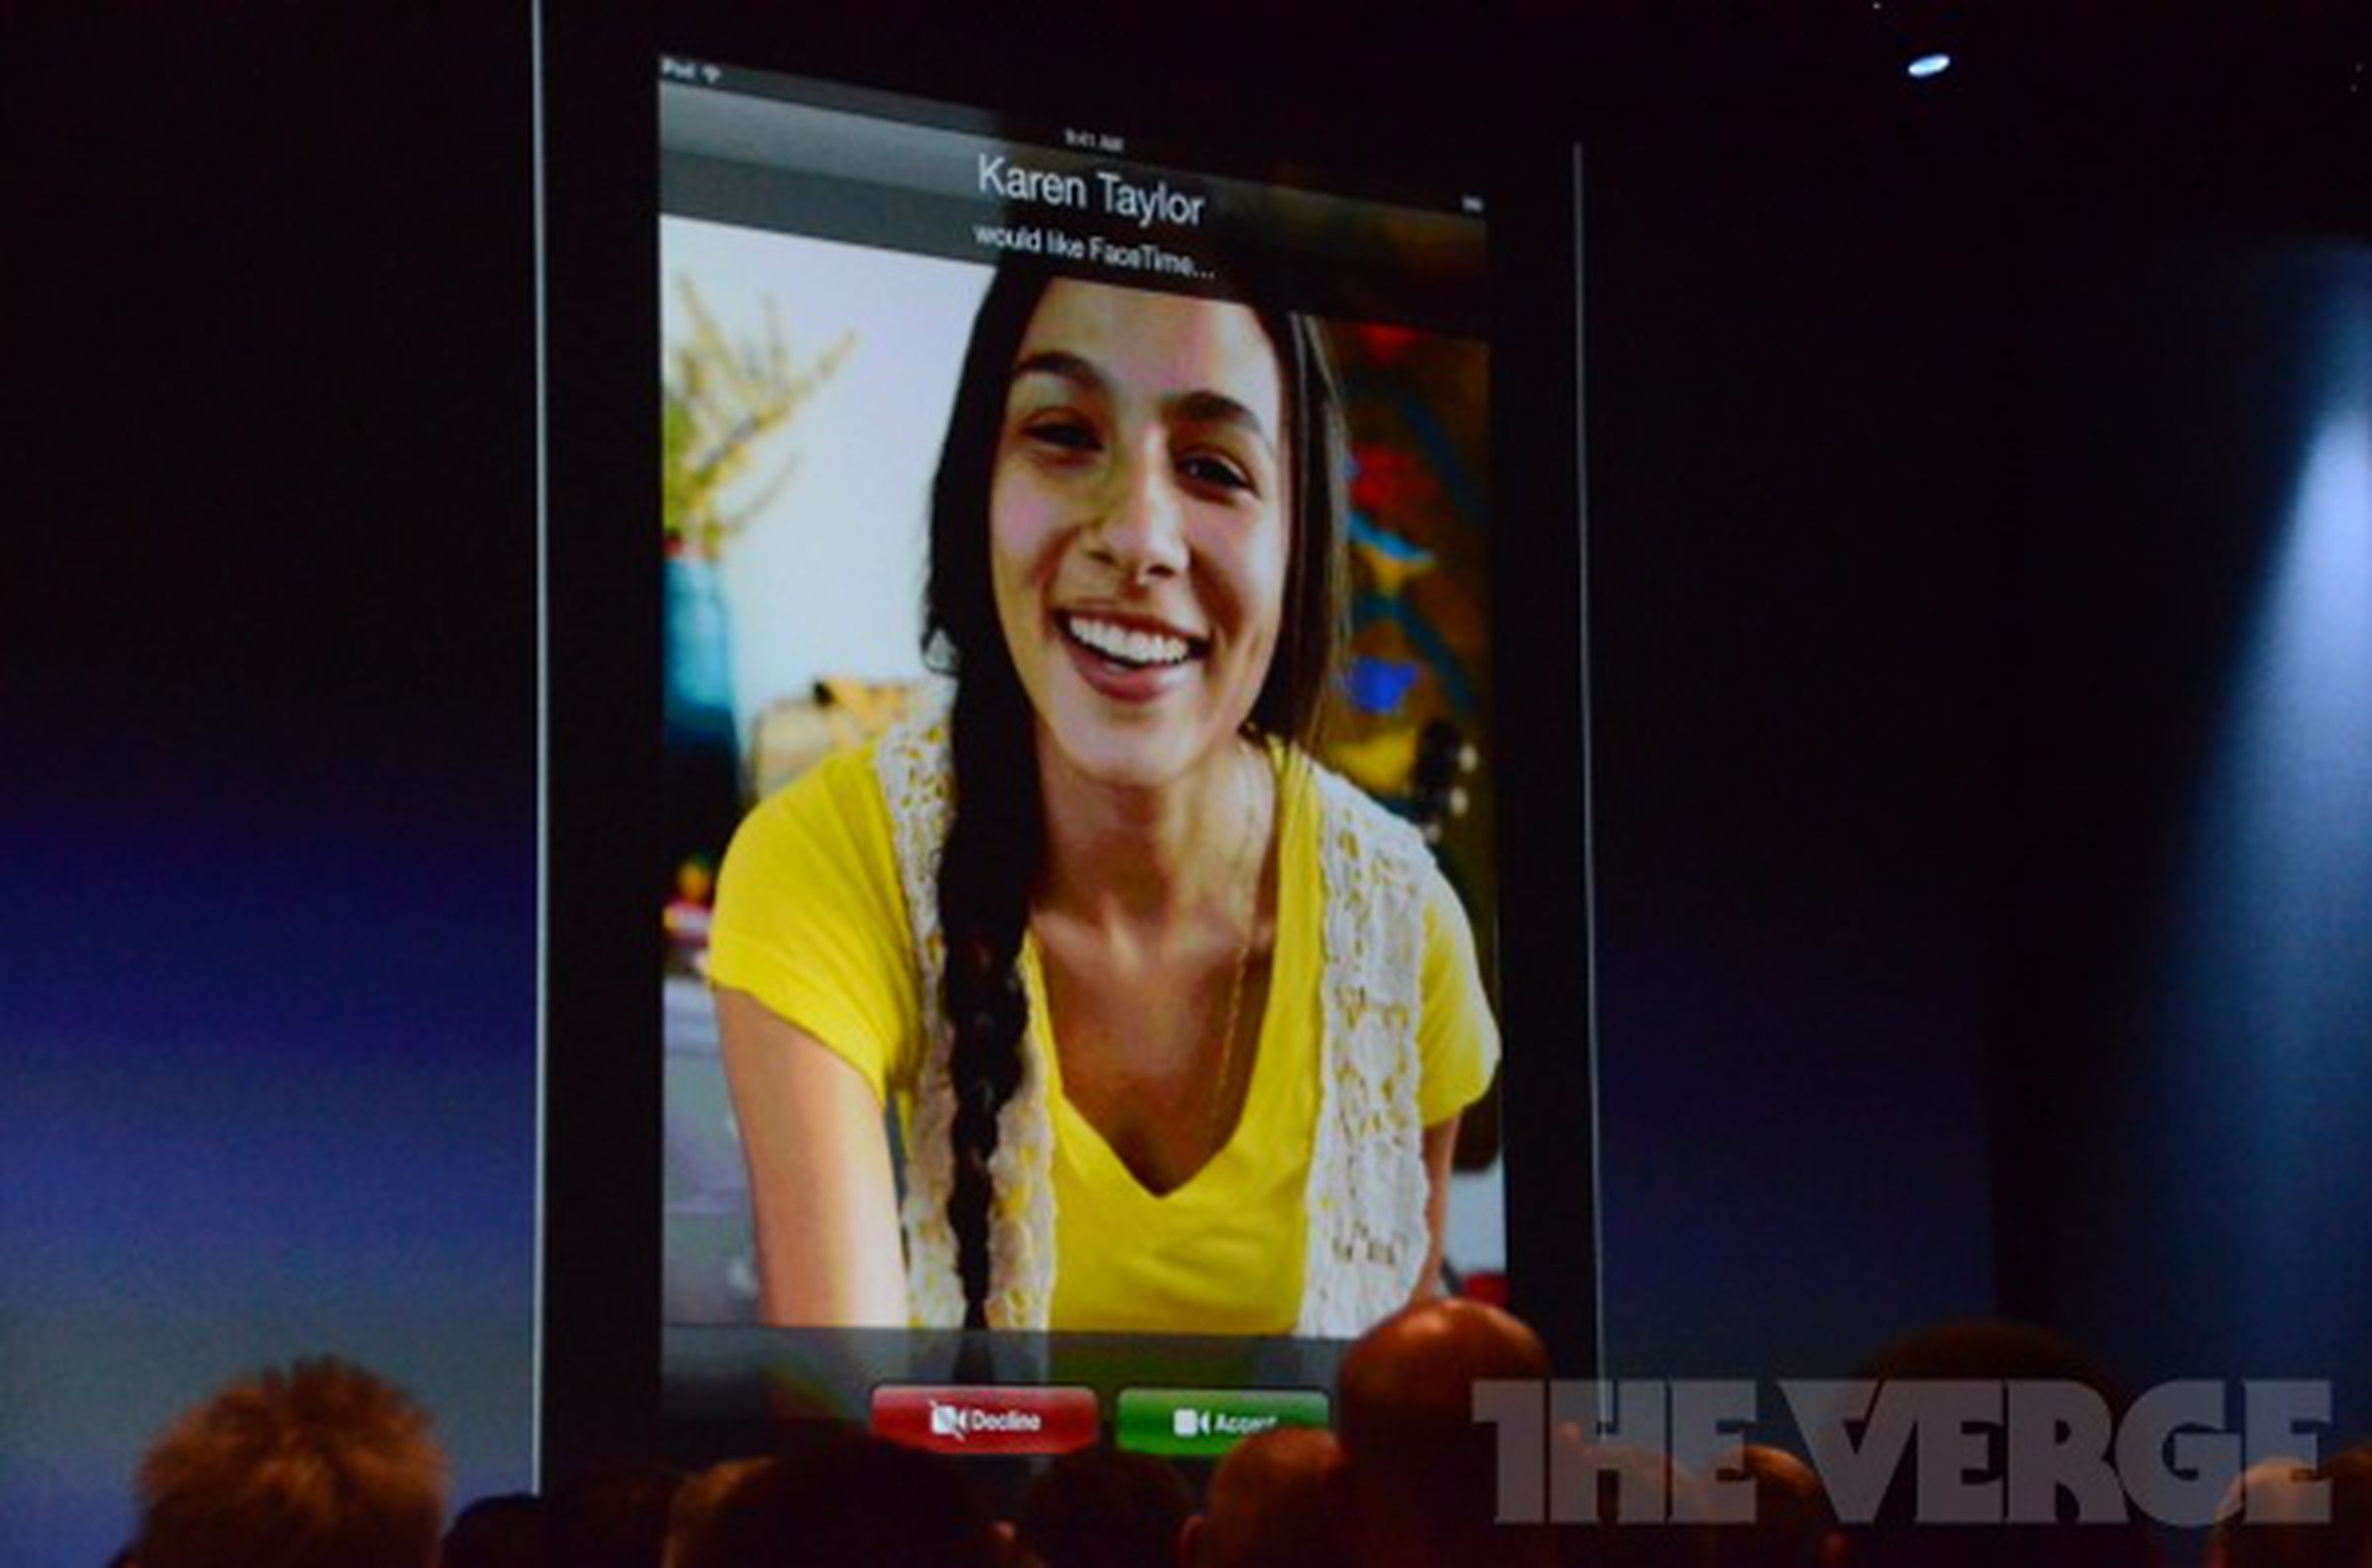 Facetime for cellular on iOS 6 liveblog images